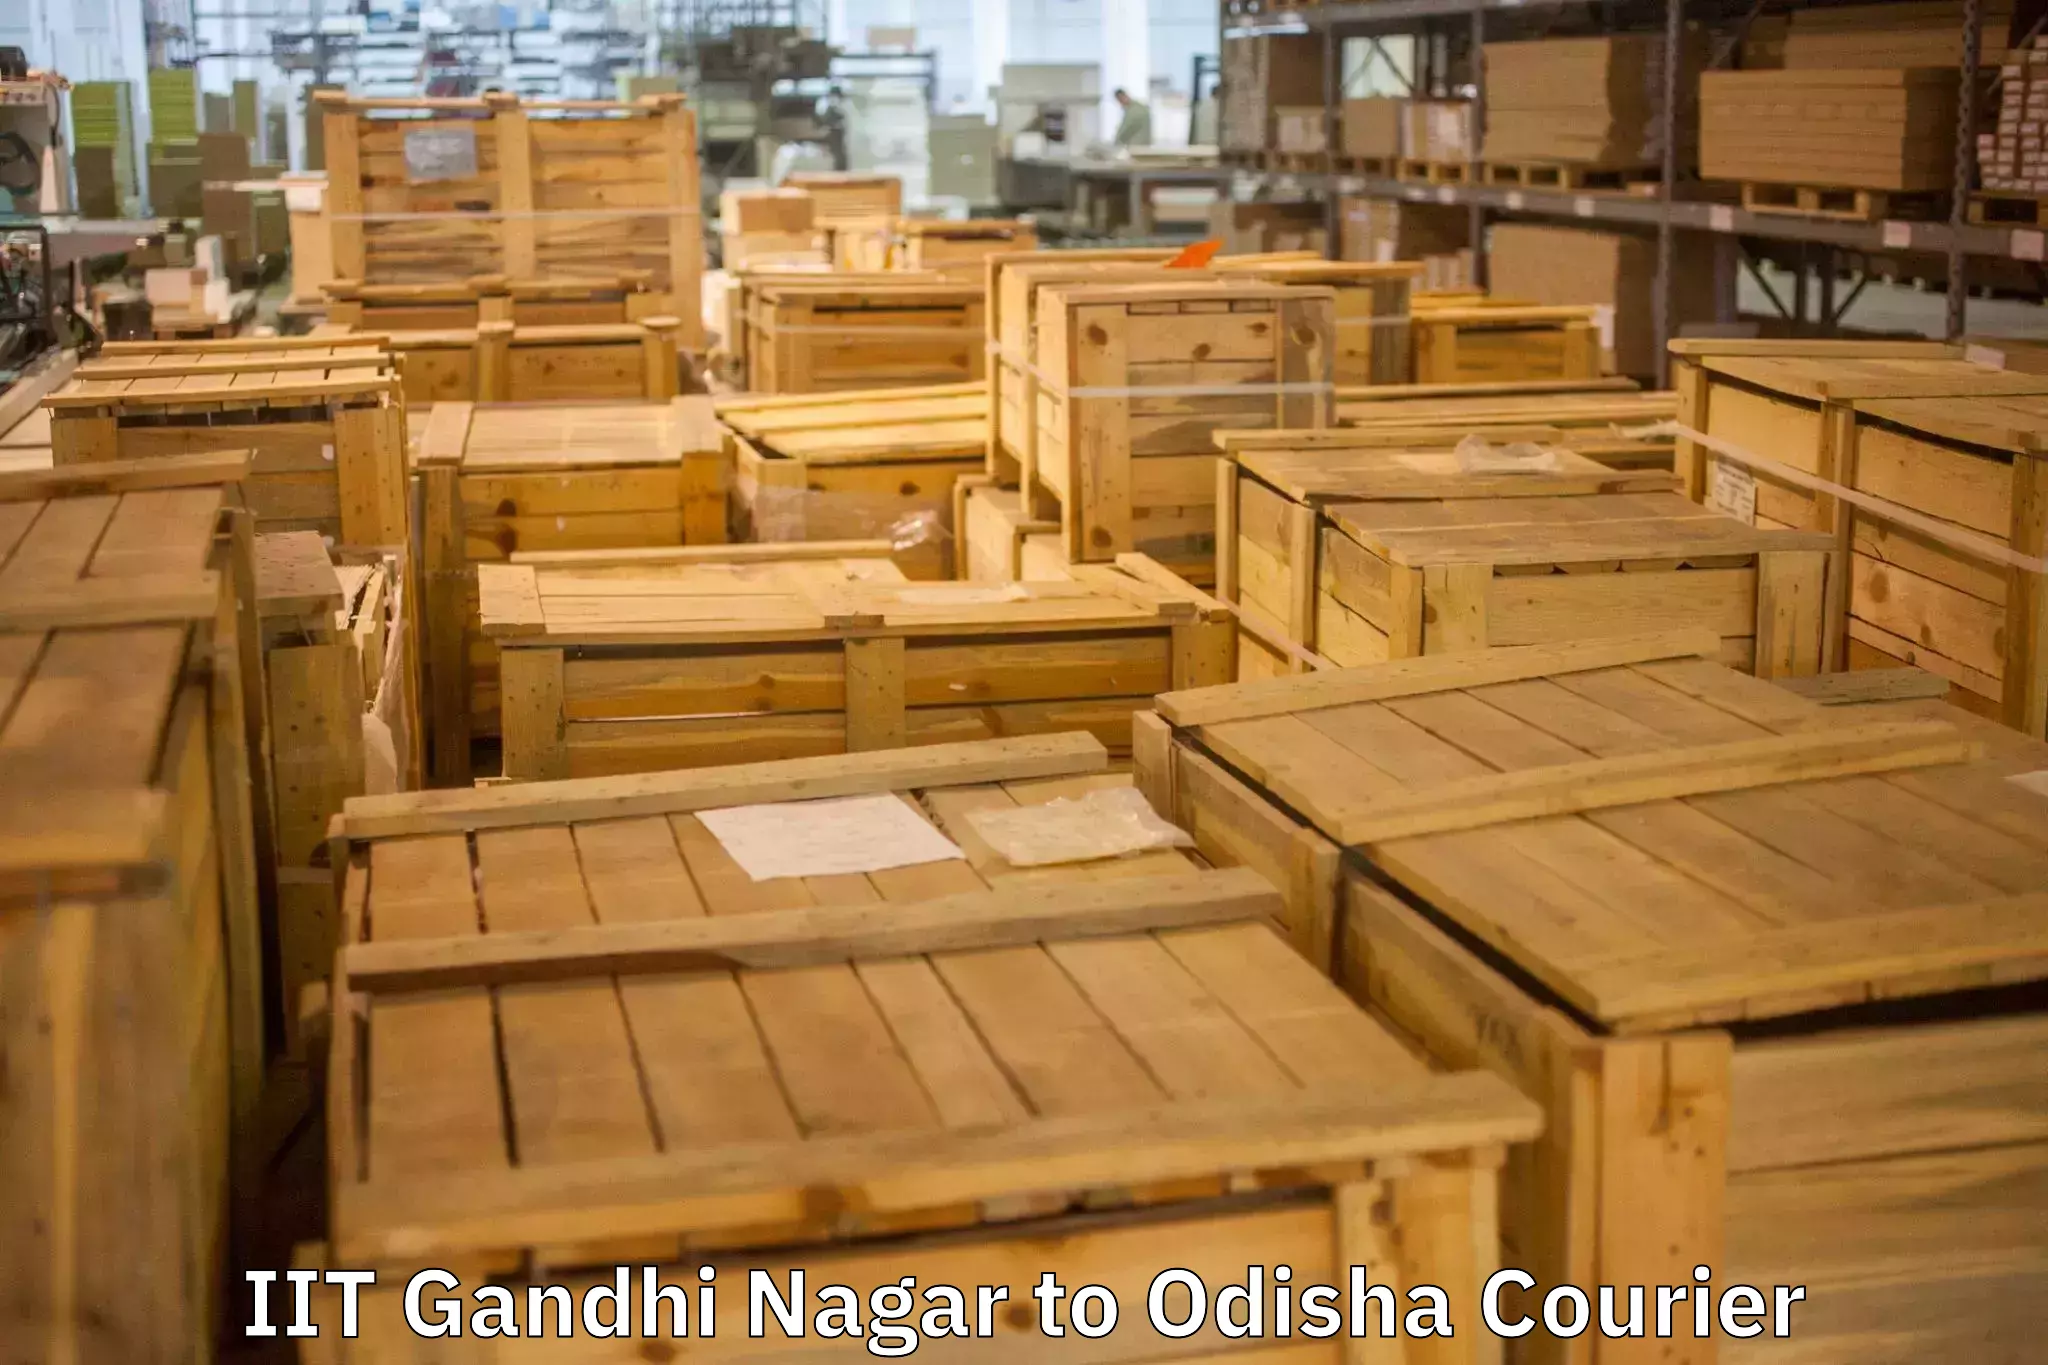 Quality household movers IIT Gandhi Nagar to Odisha